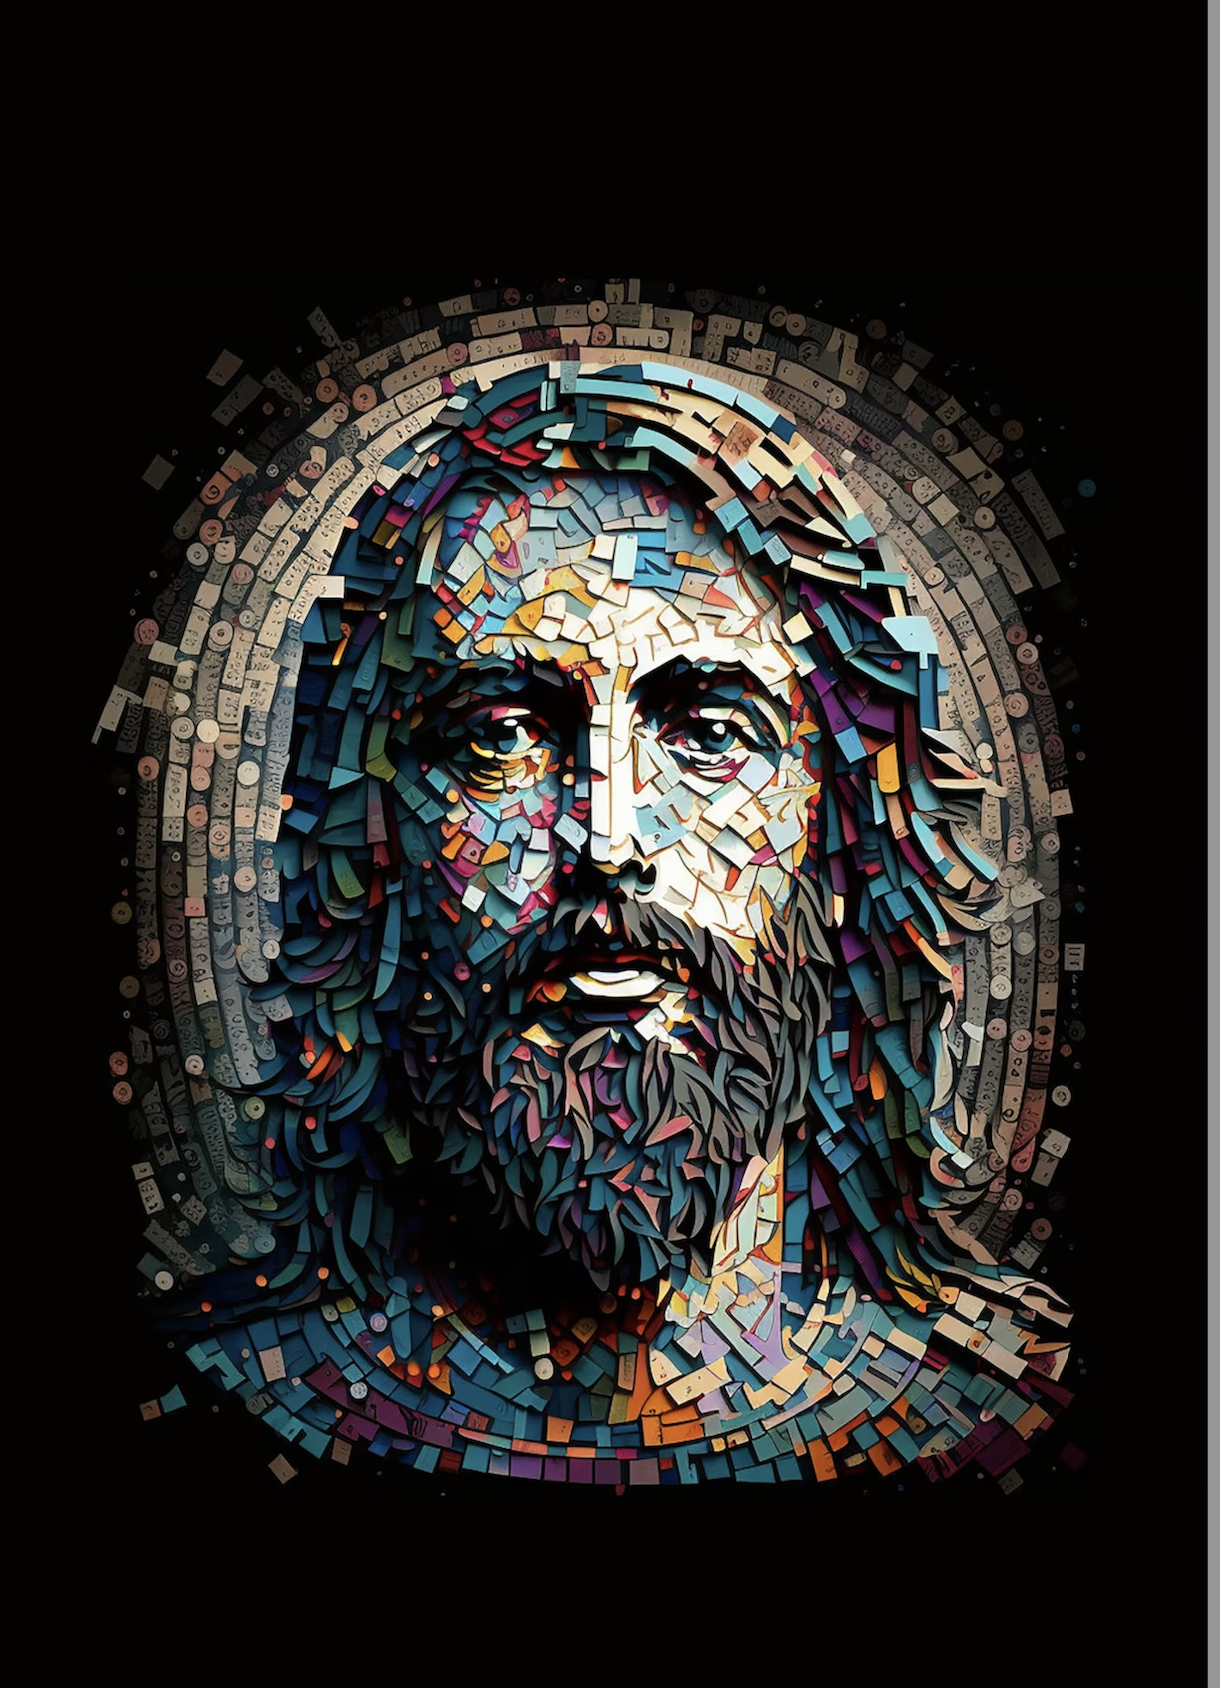 Formed.org – “Catholic Netflix” – Holy Saints